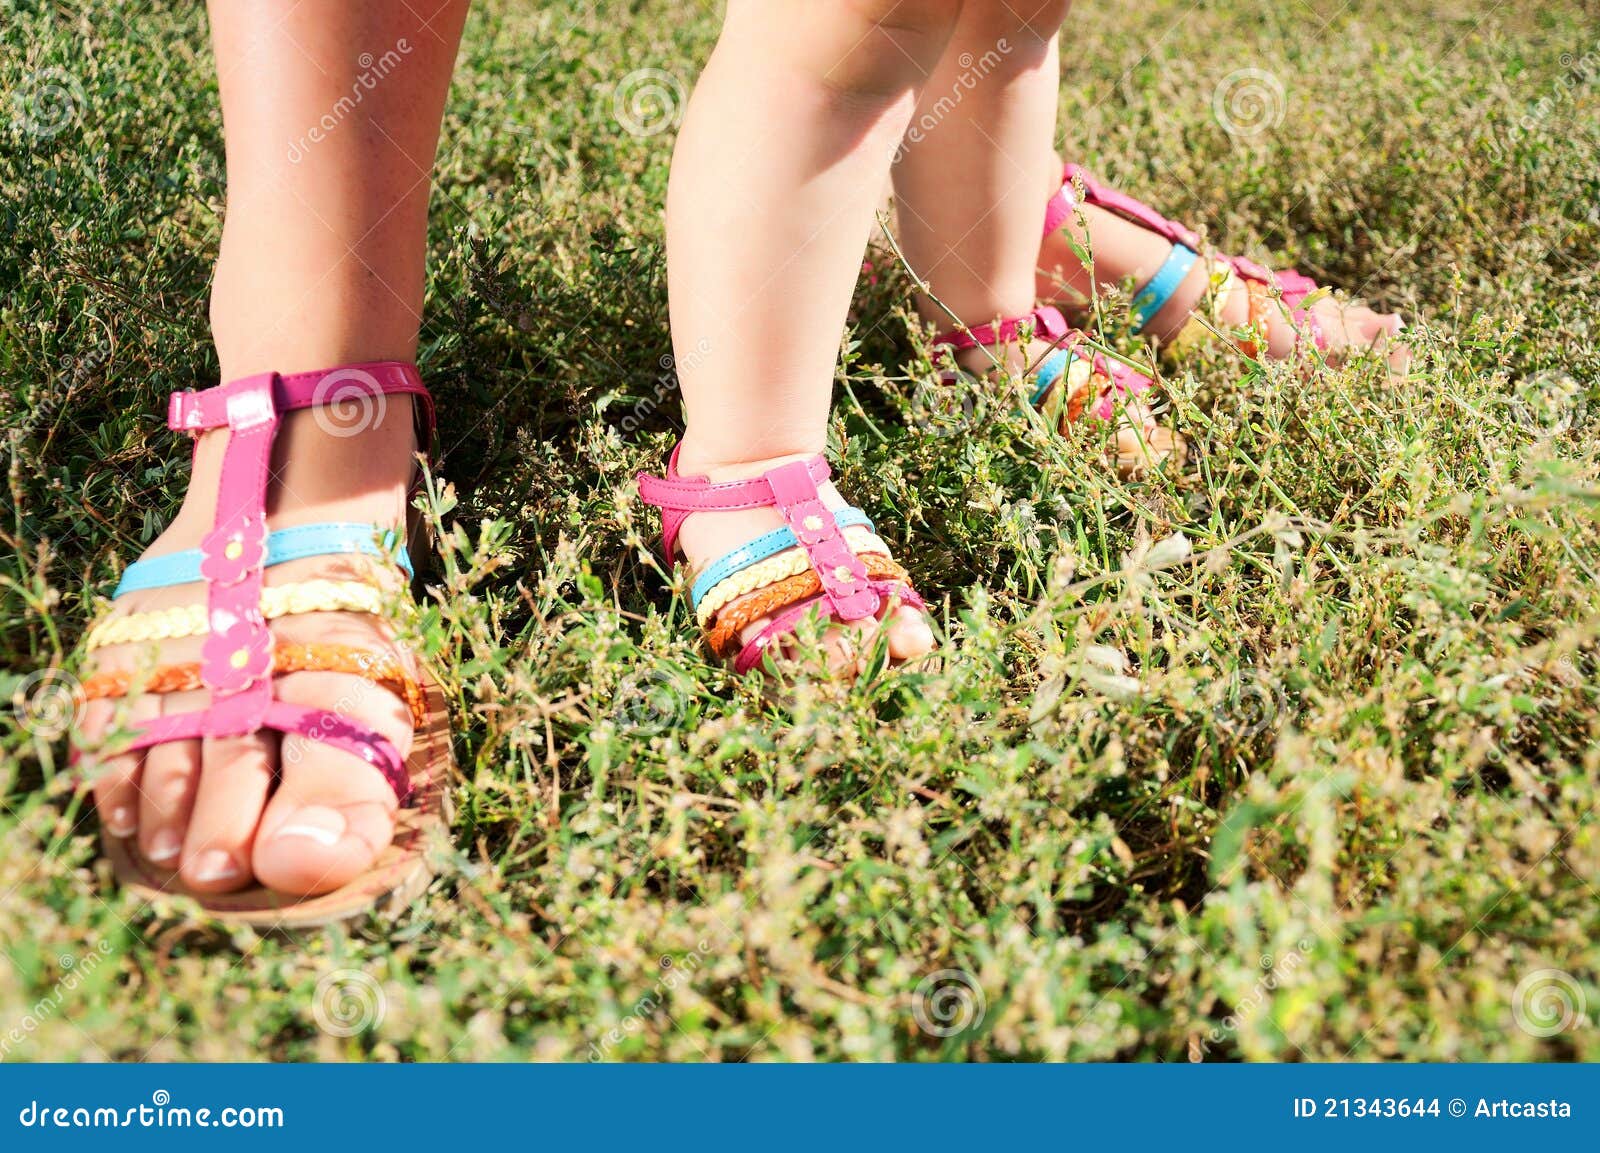 Девочки в сандалях. Девочка в сандалях. Ноги в сандалях. Детские ножки в босоножках. Детские ножки в сандалиях.